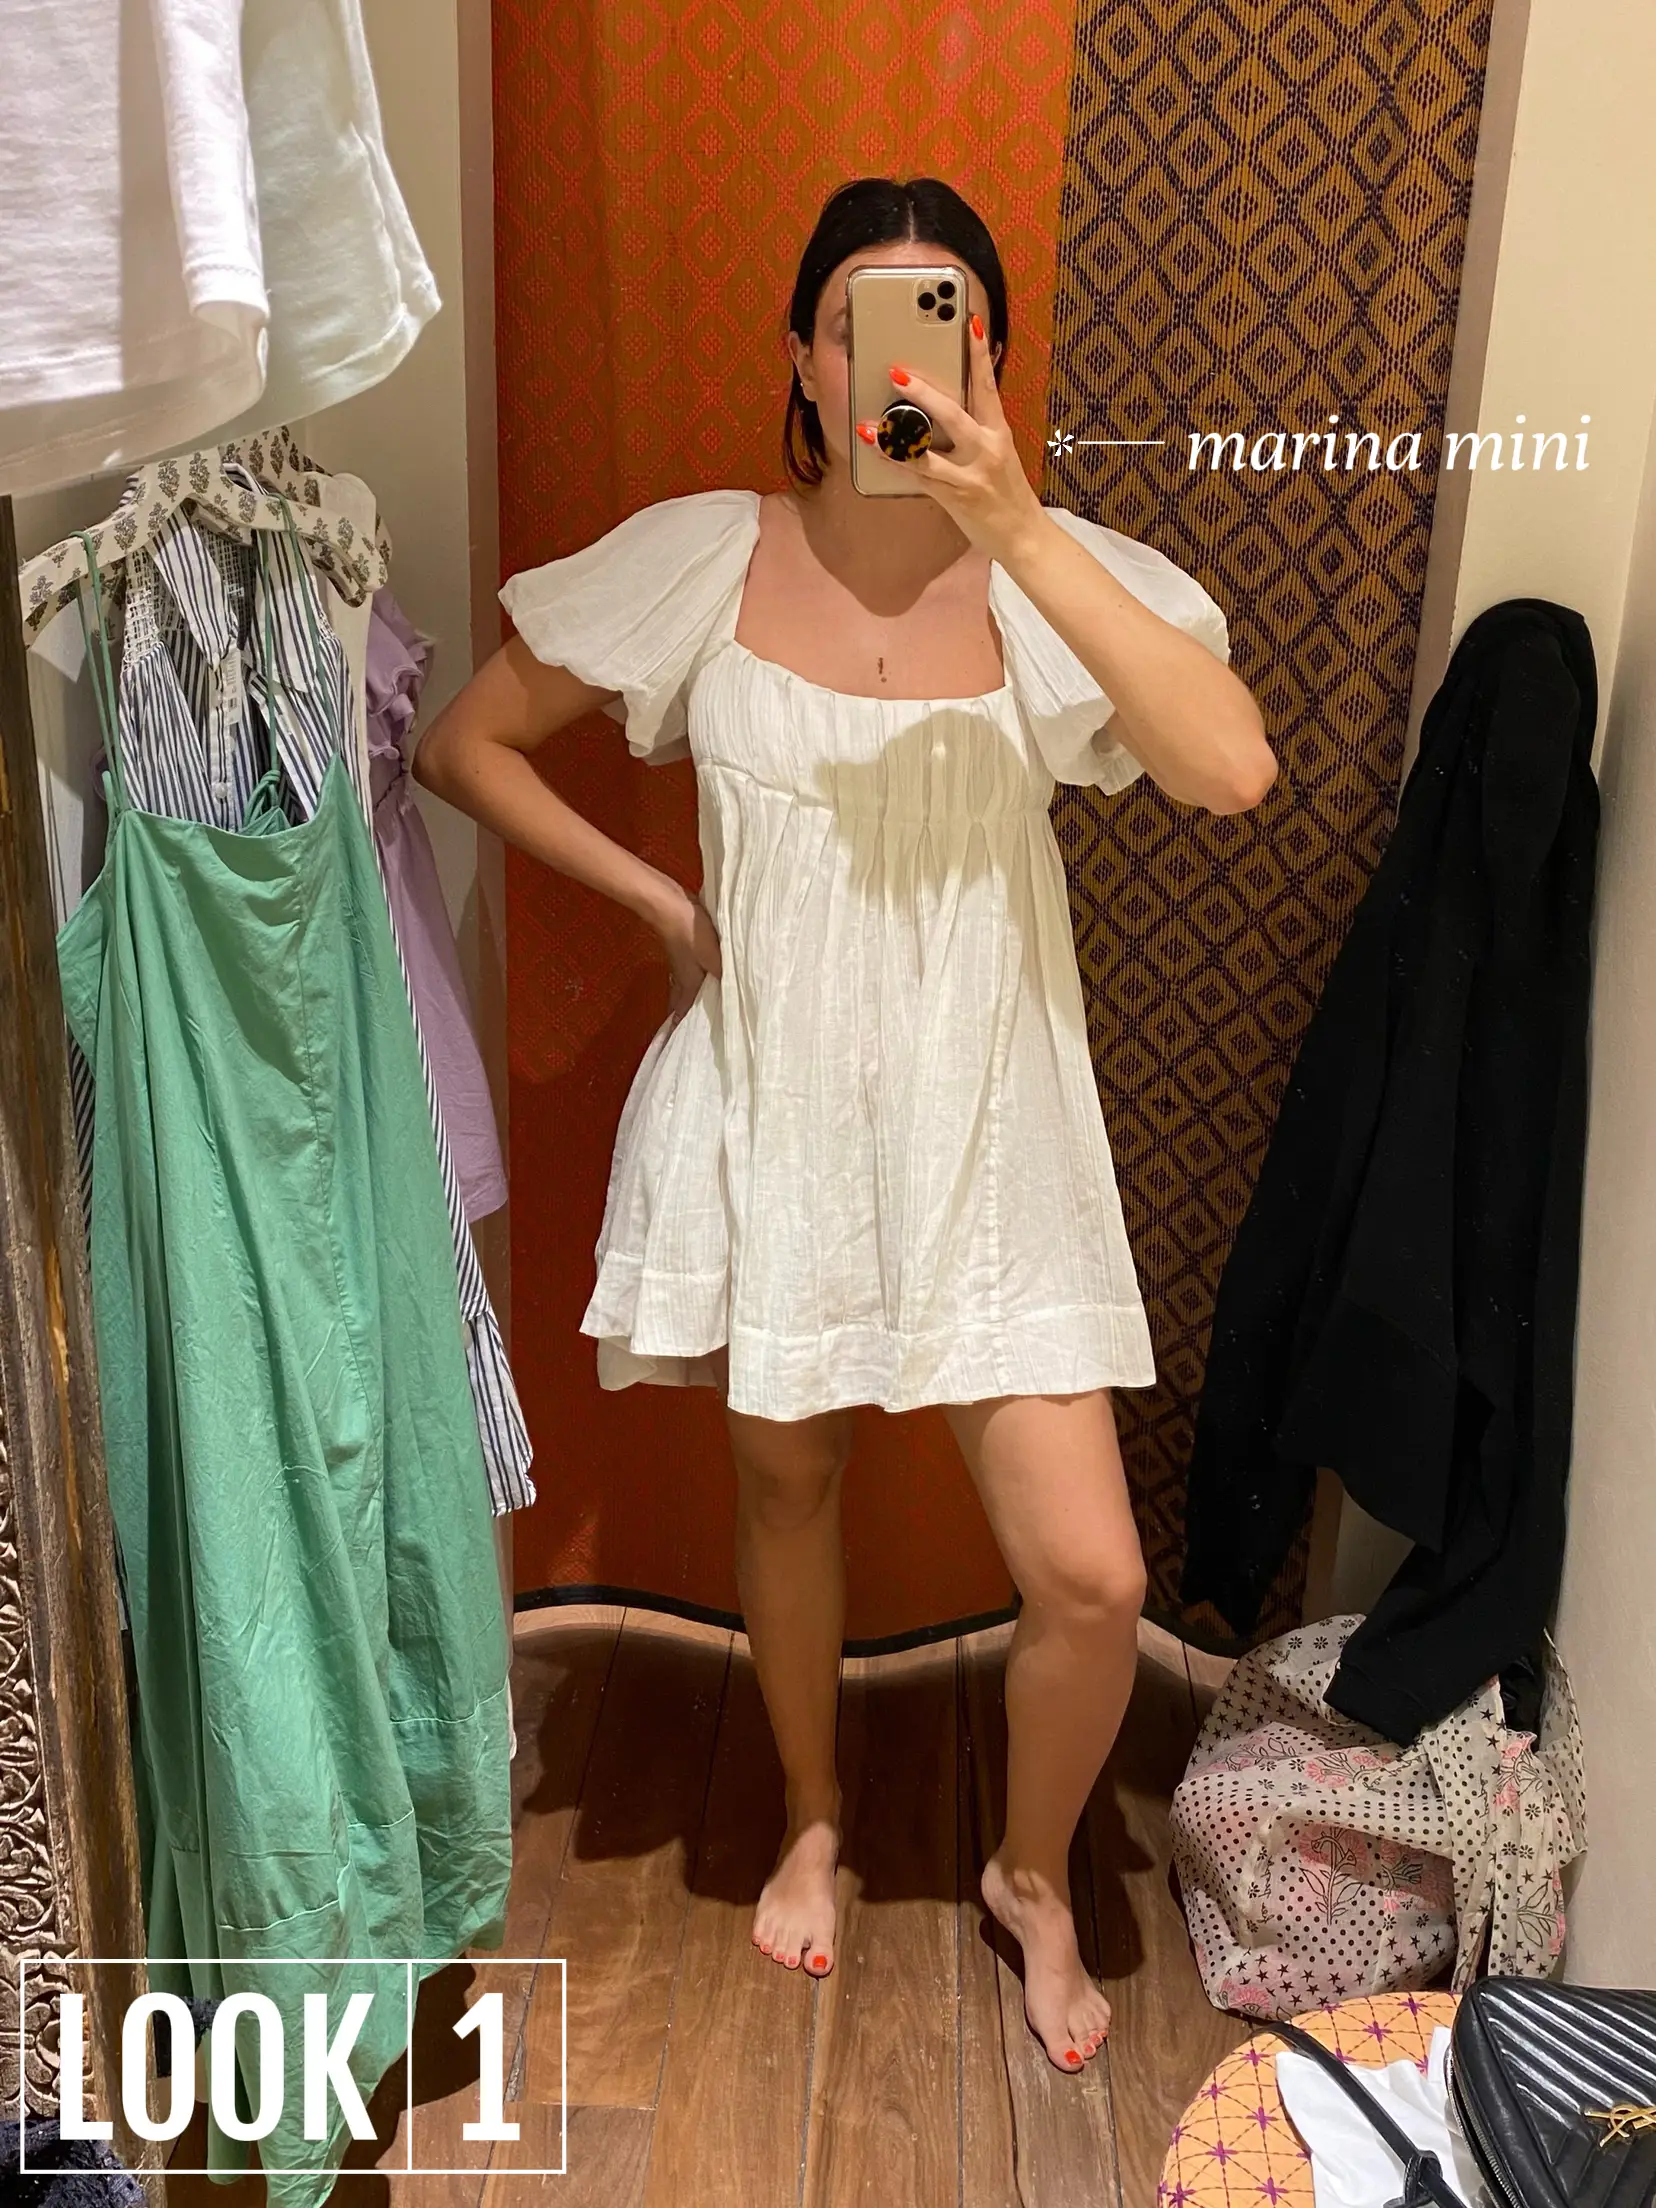 Buy Emerson Petite Flutter Sleeve Mini Dress - Forever New